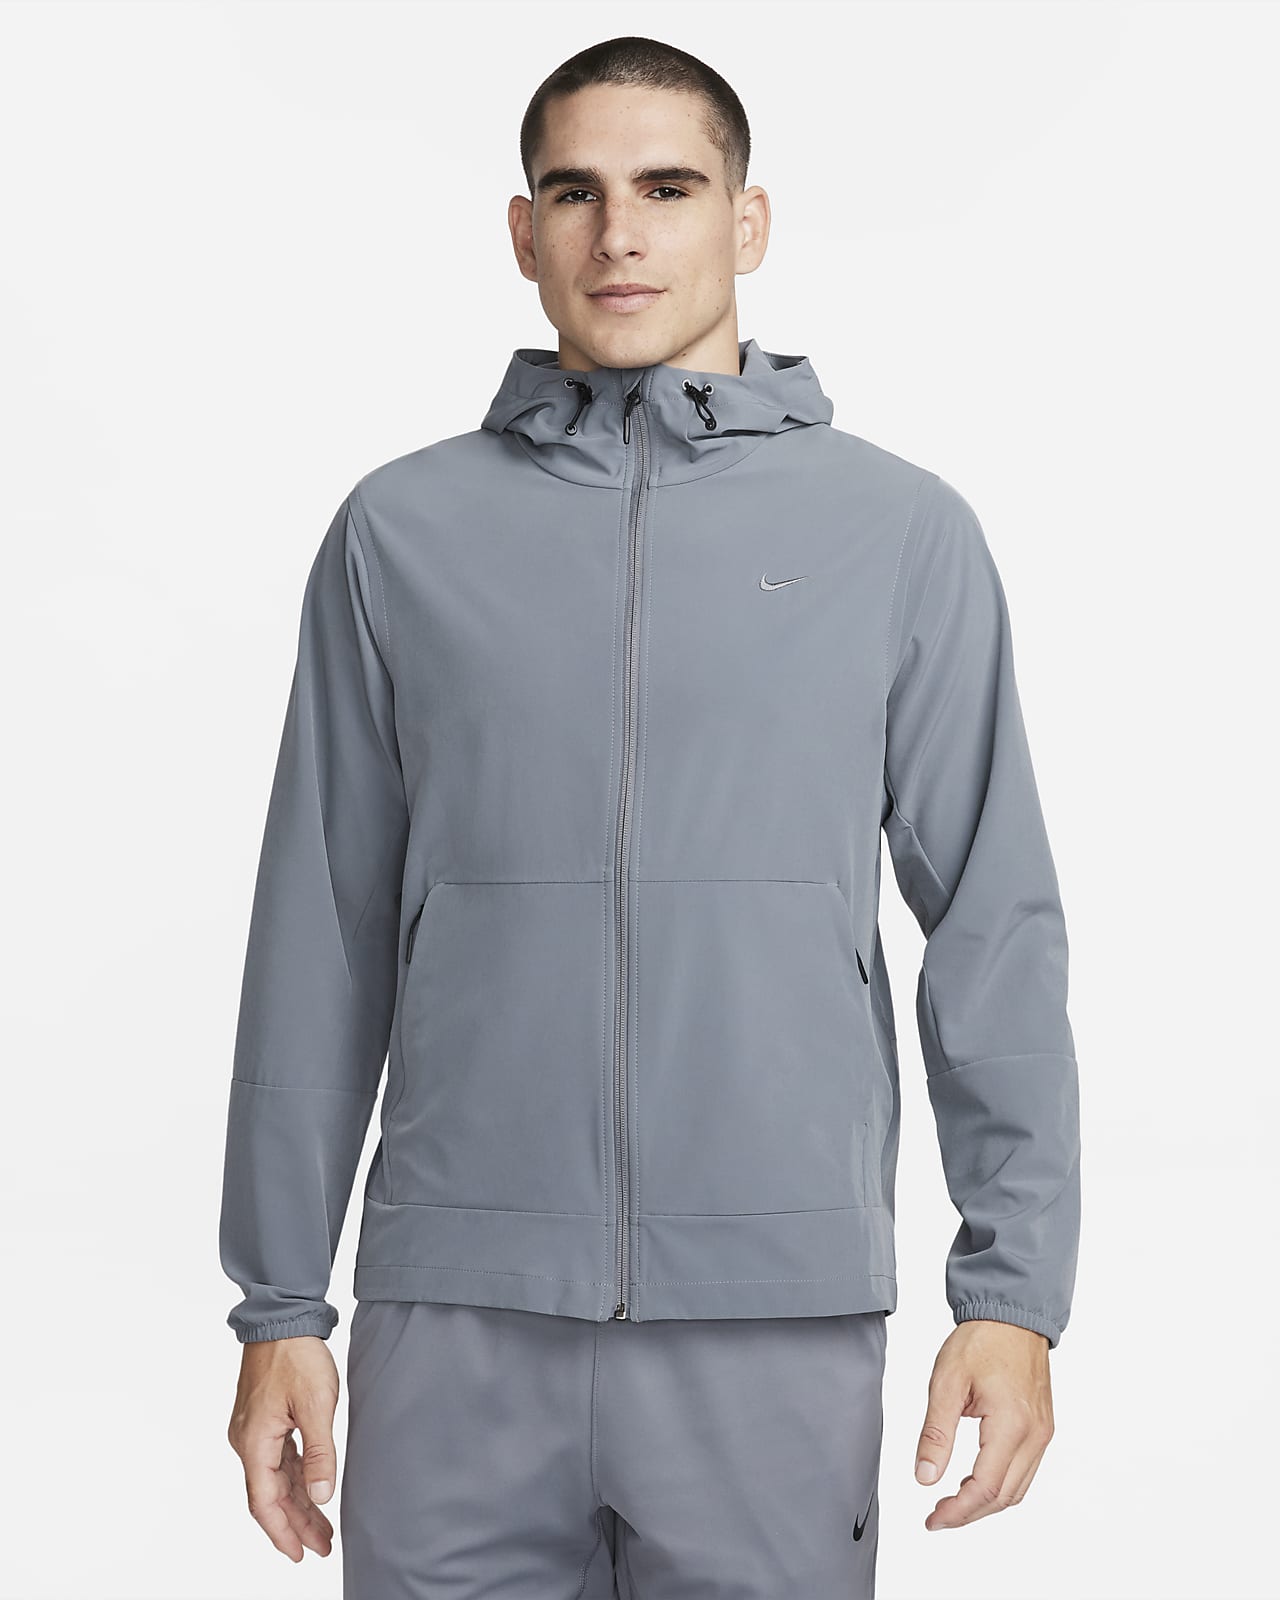 Pánská všestranná vodoodpudivá bunda Nike Unlimited s kapucí